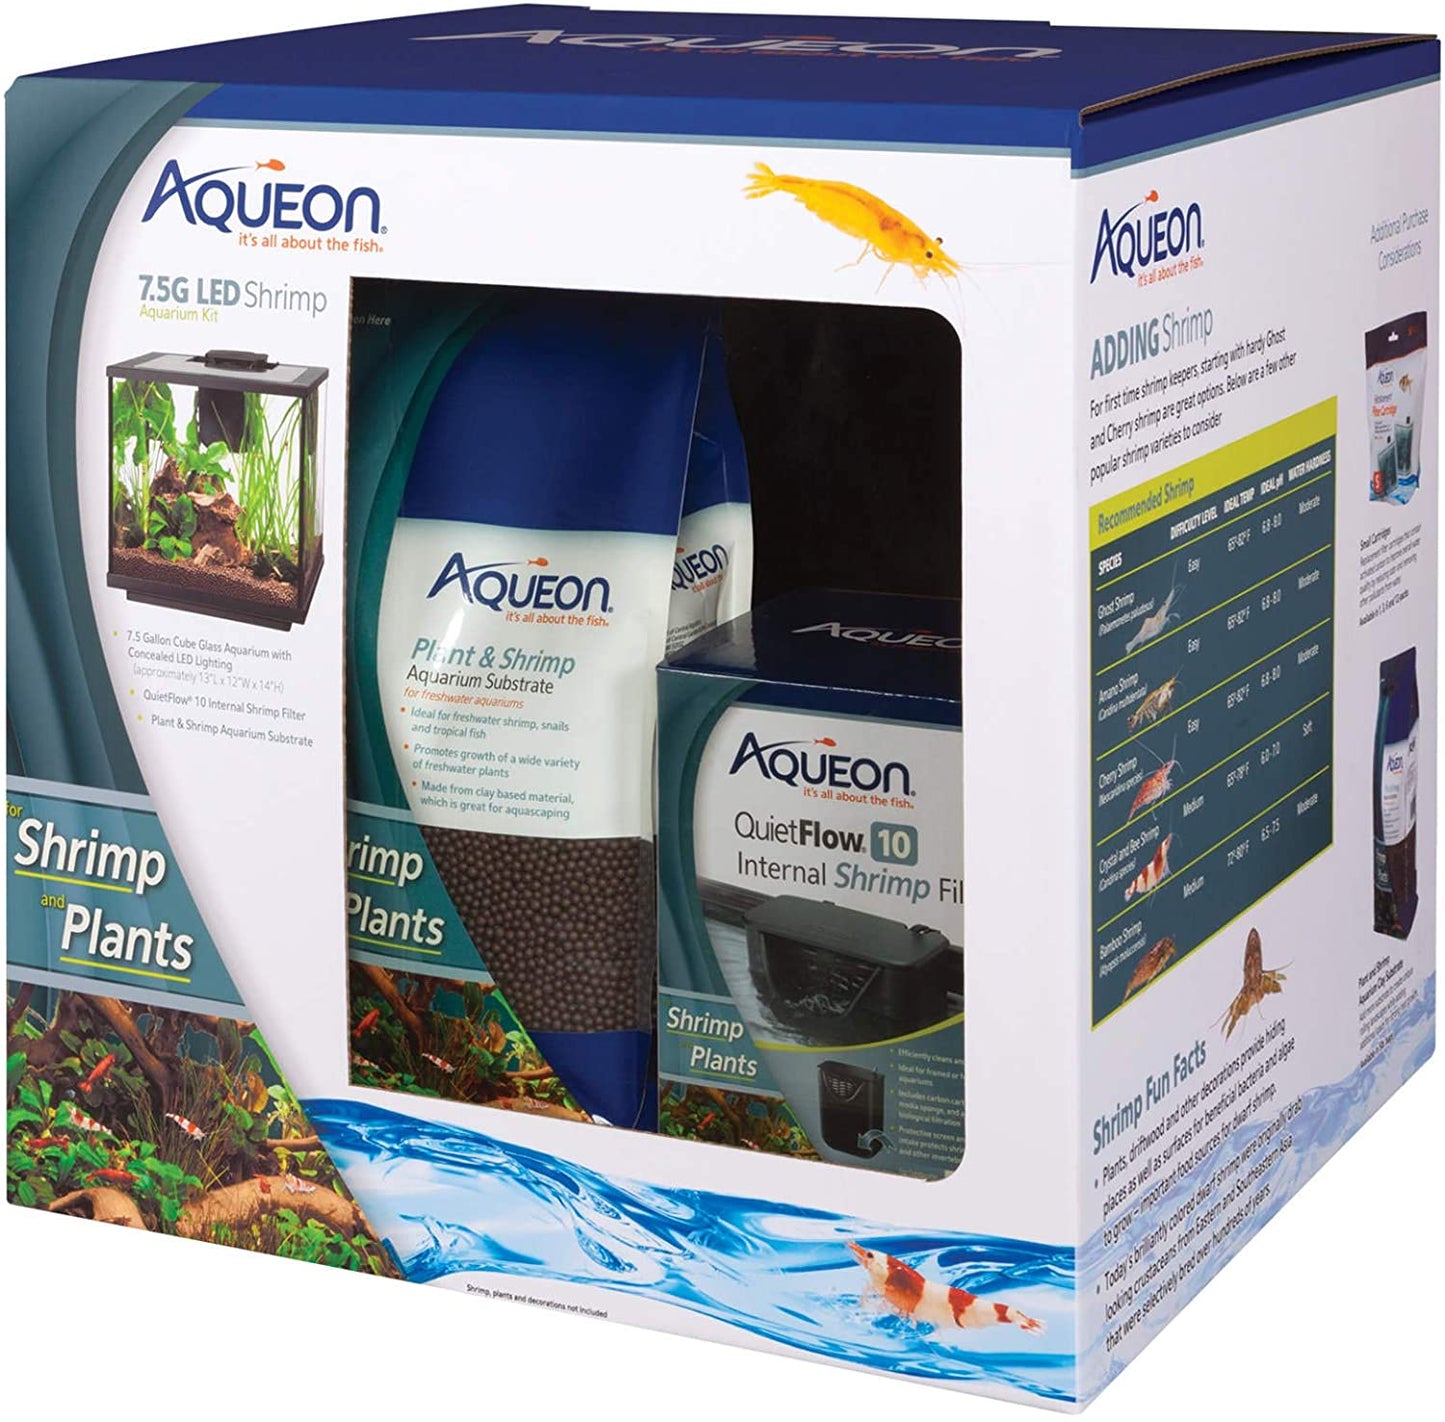 Aqueon LED Shrimp Aquarium Kit 7.5 Gallon